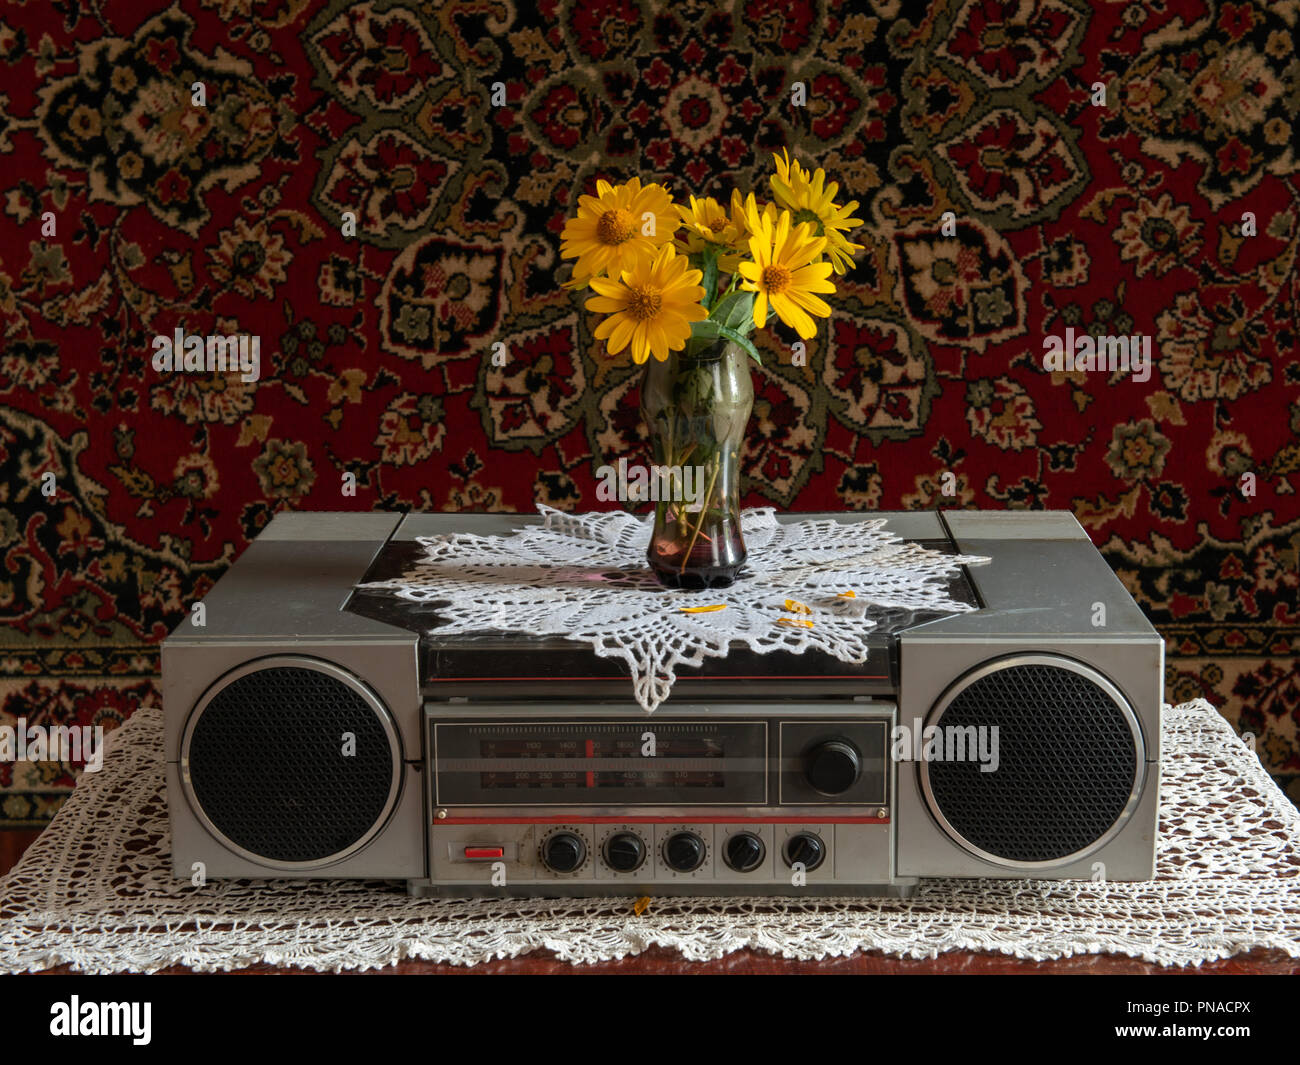 Vieille radio sur la table avec une horloge et un vase de fleurs Banque D'Images